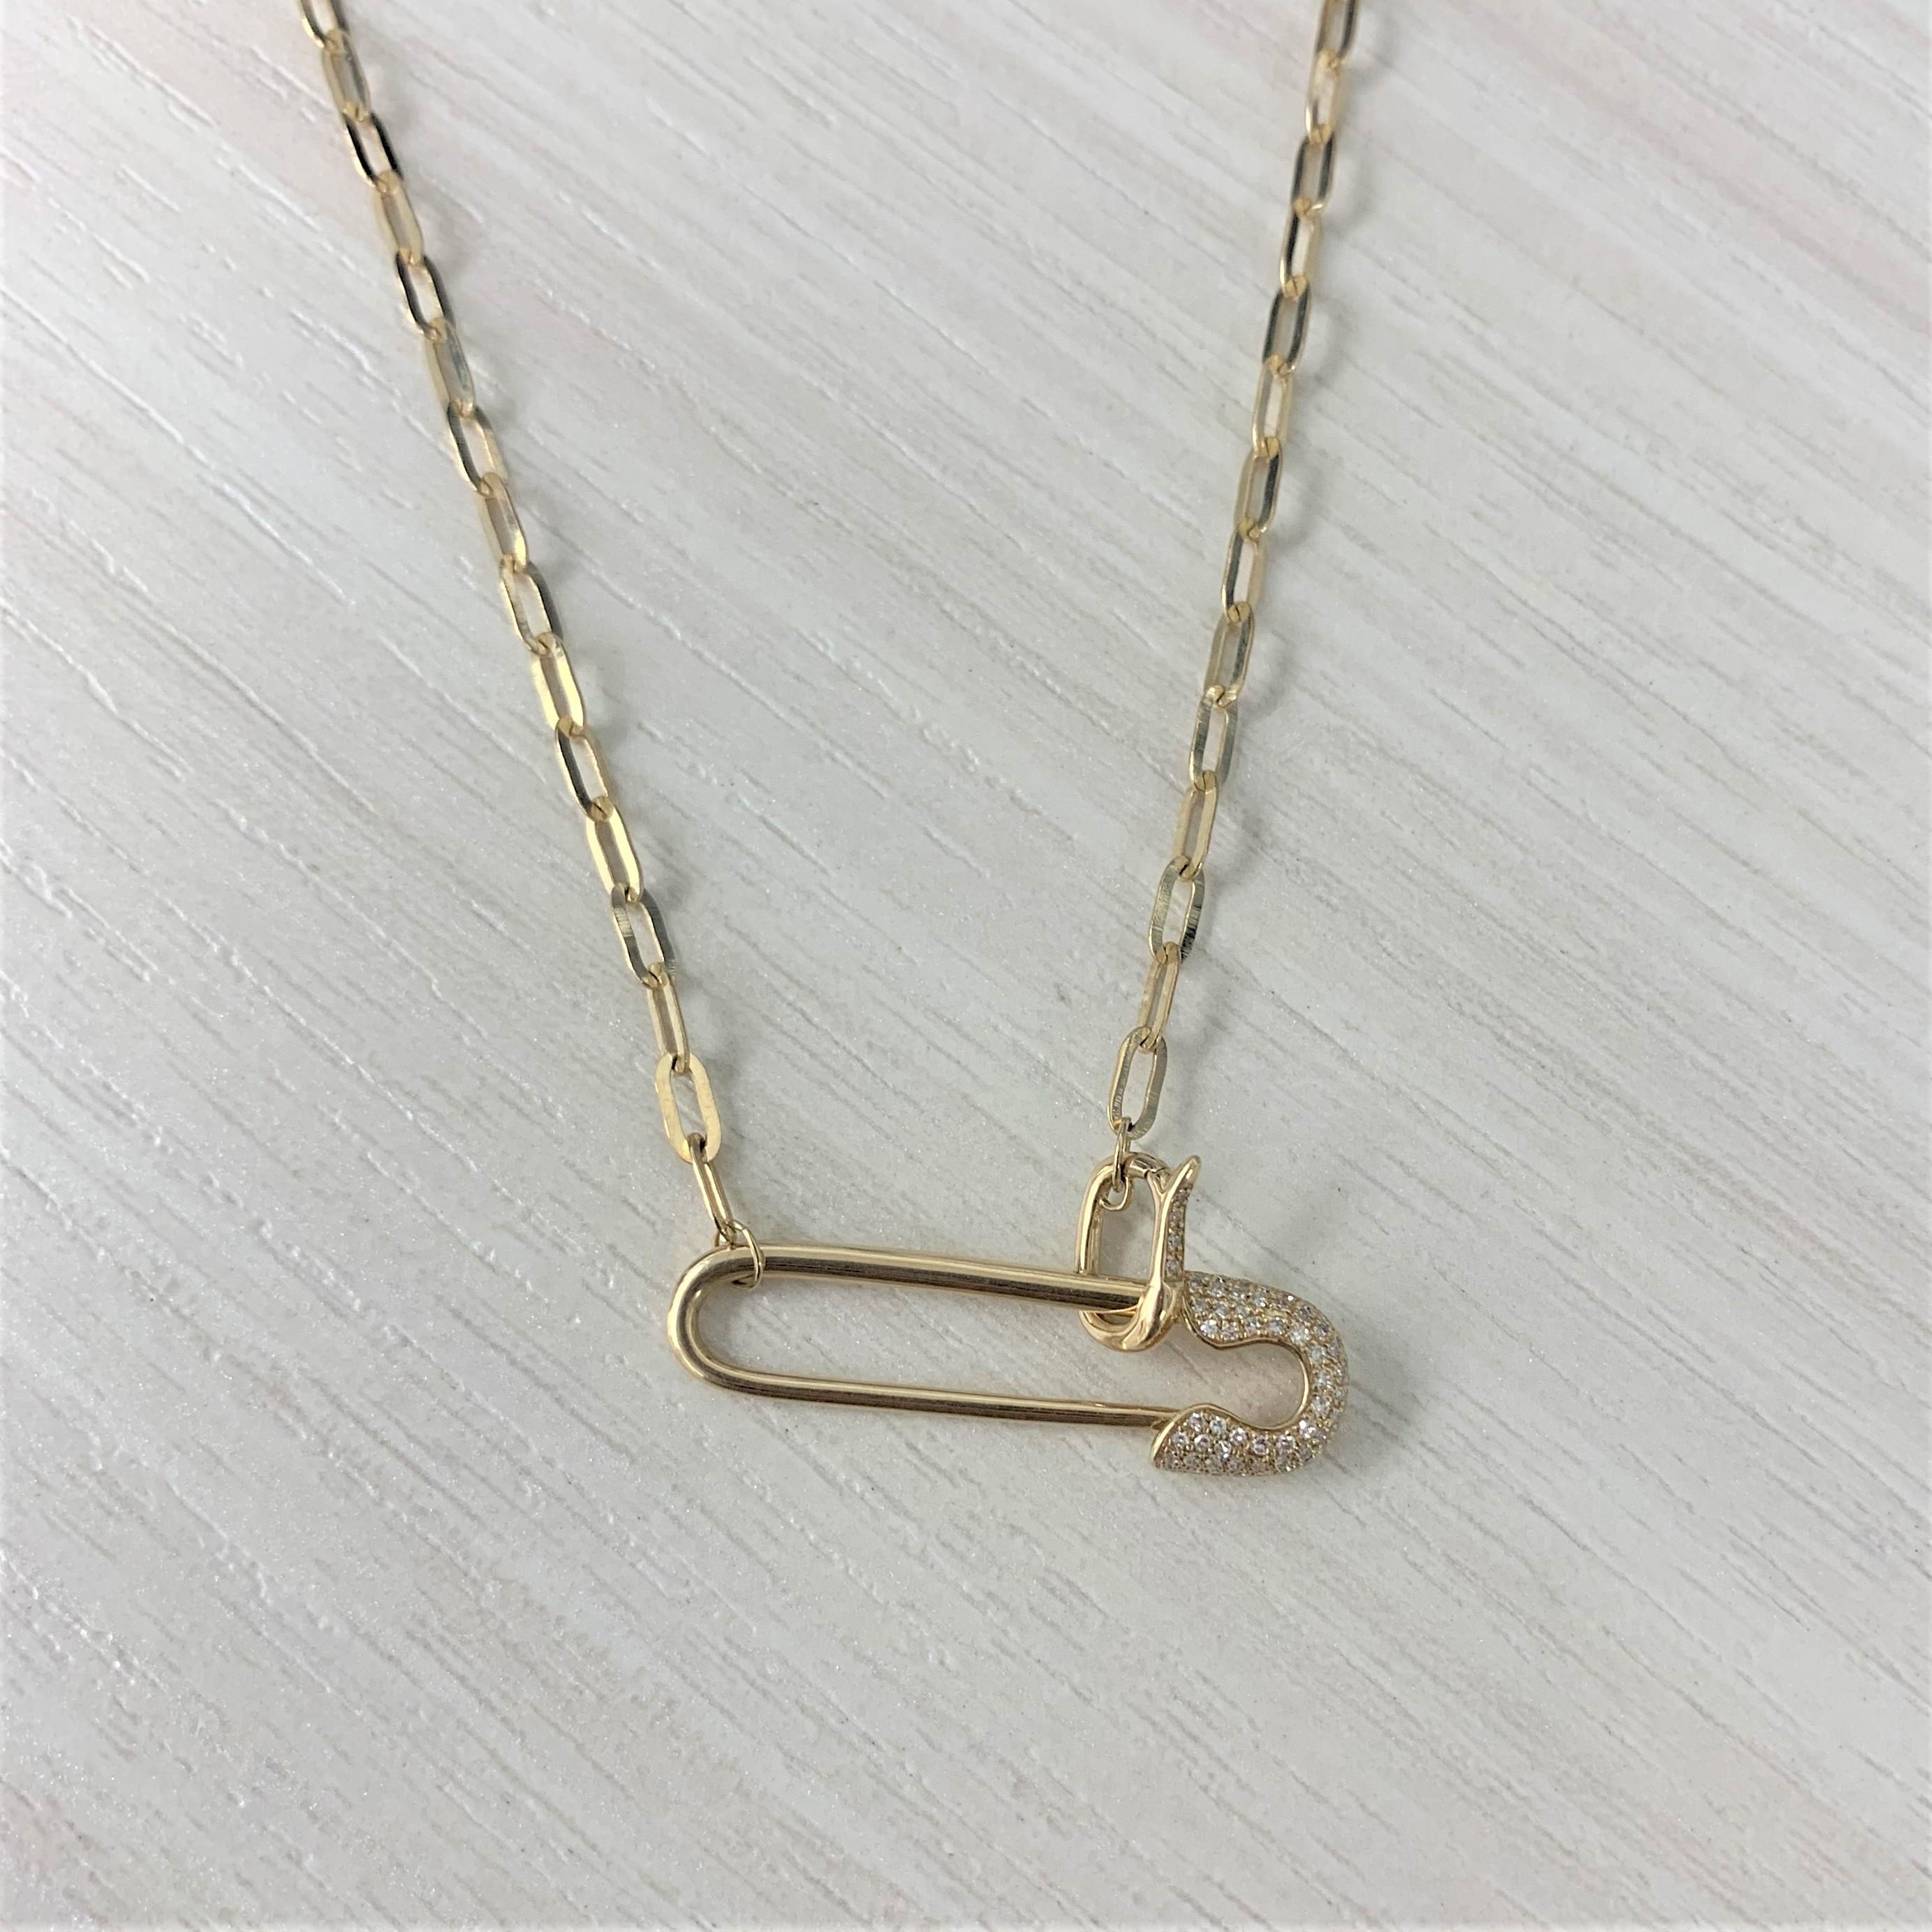 Ajoutez cet adorable collier Saftey Pin à votre garde-robe pour ajouter une touche de glamour ! Fabriqué en or jaune 14K, ce collier présente 0,12 carats de diamants blancs naturels ronds. Le poids de l'or est de 5,46 grammes. La longueur de la